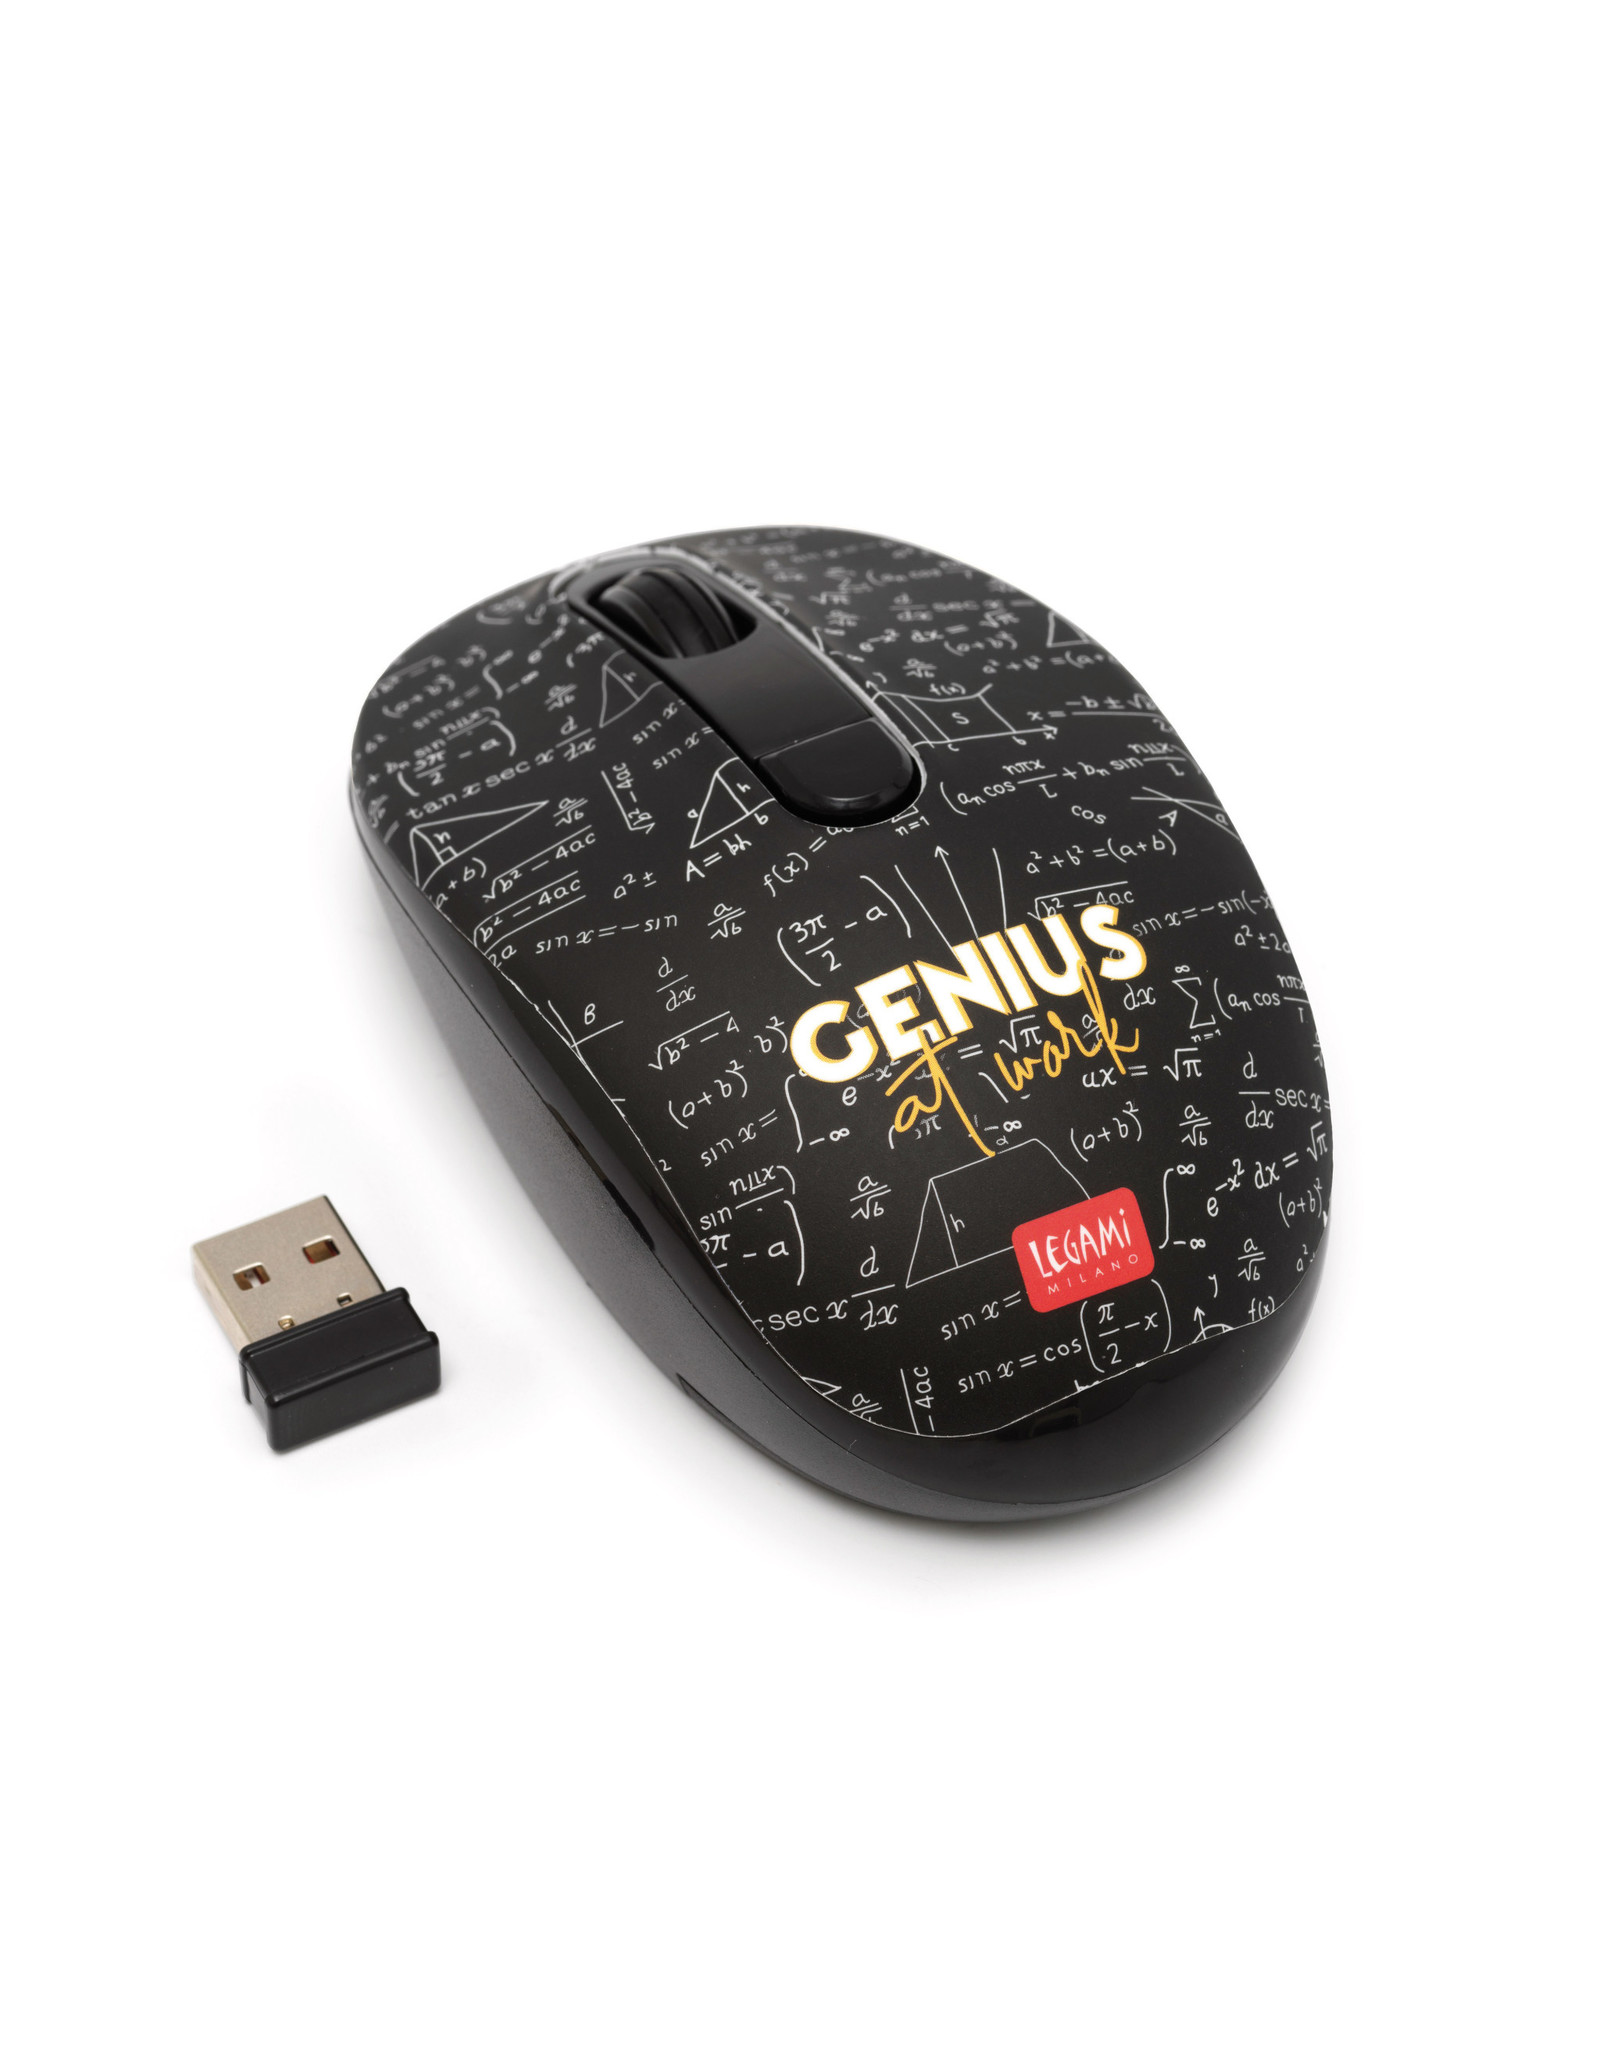 Jelly Jazz wireless mouse - genius